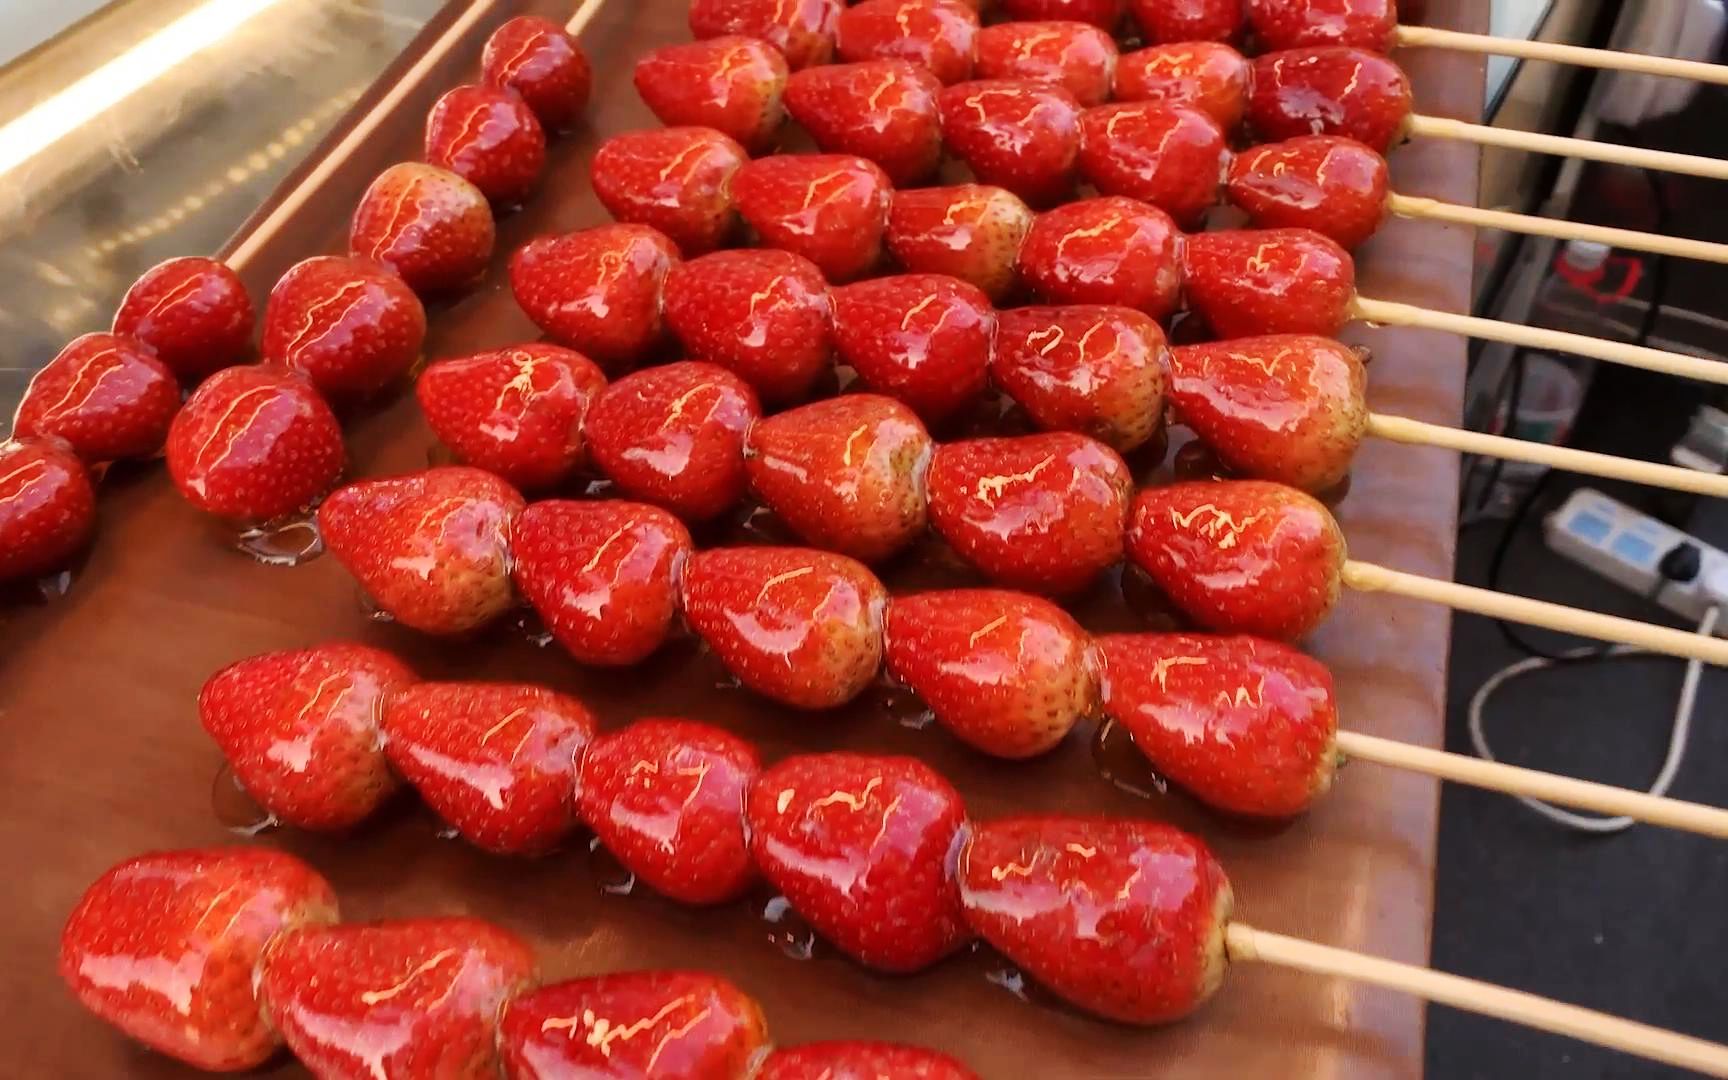 草莓山楂糖葫芦照片图片